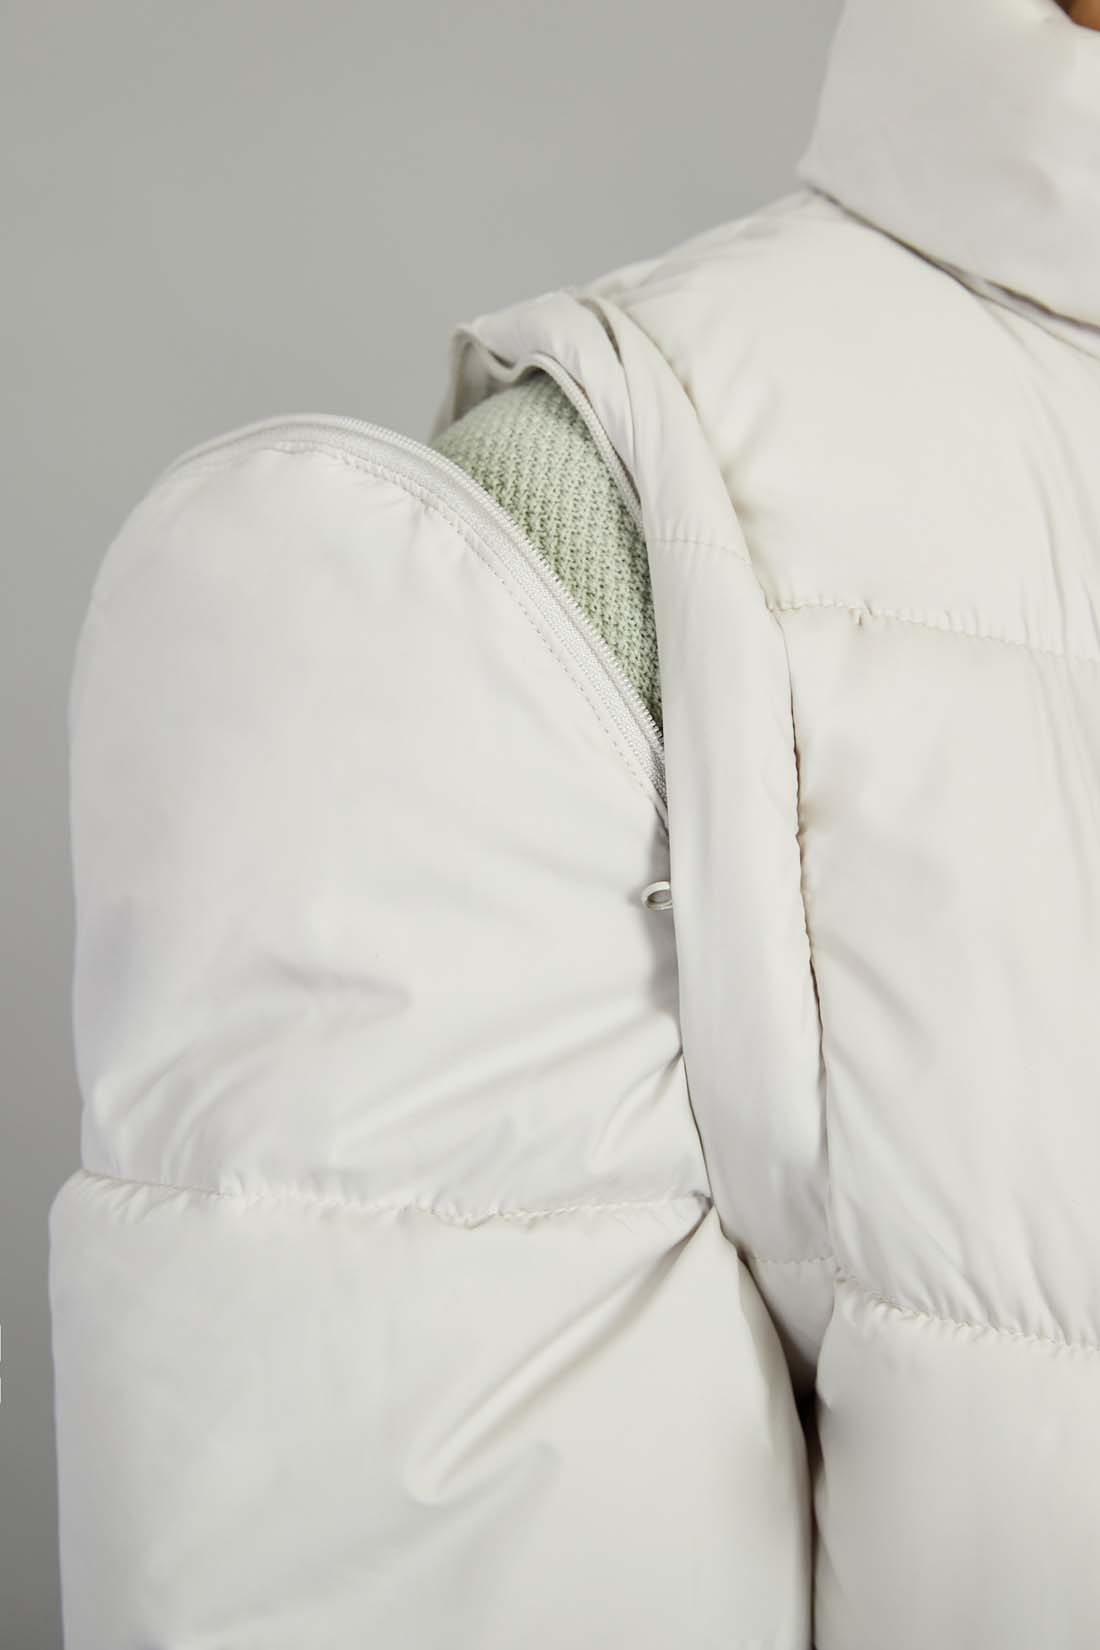 Куртка (арт. baon B0422004), размер XL, цвет серый Куртка (арт. baon B0422004) - фото 4